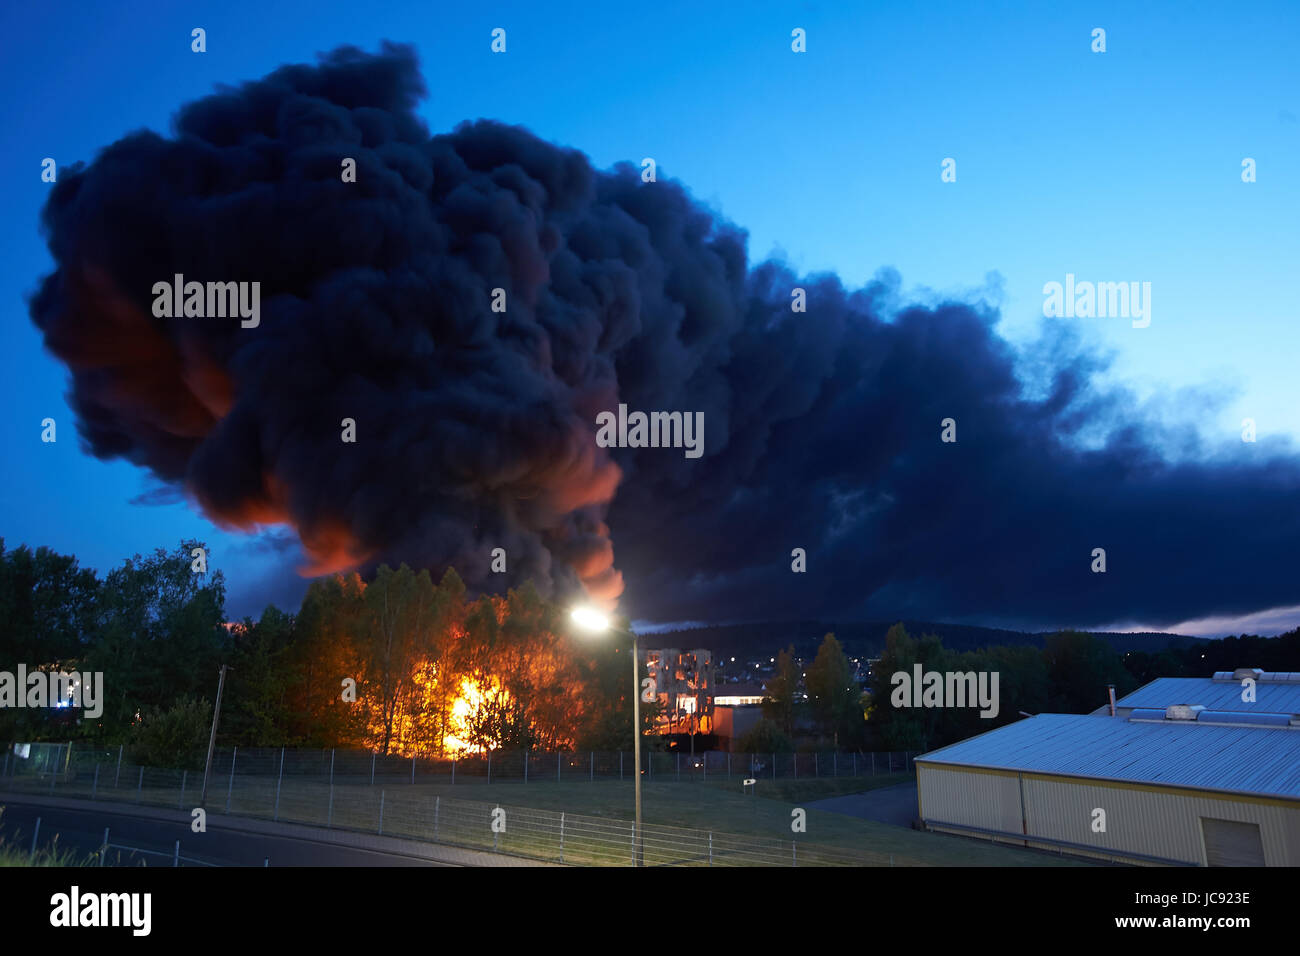 Ransbach-Baumbach, Deutschland. 15. Juni 2017. Rauch von einem Feuer in  einem Reifen-Shop in Ransbach-Baumbach, Deutschland, 15. Juni 2017. Foto:  Thomas Frey/Dpa/Alamy Live News Stockfotografie - Alamy